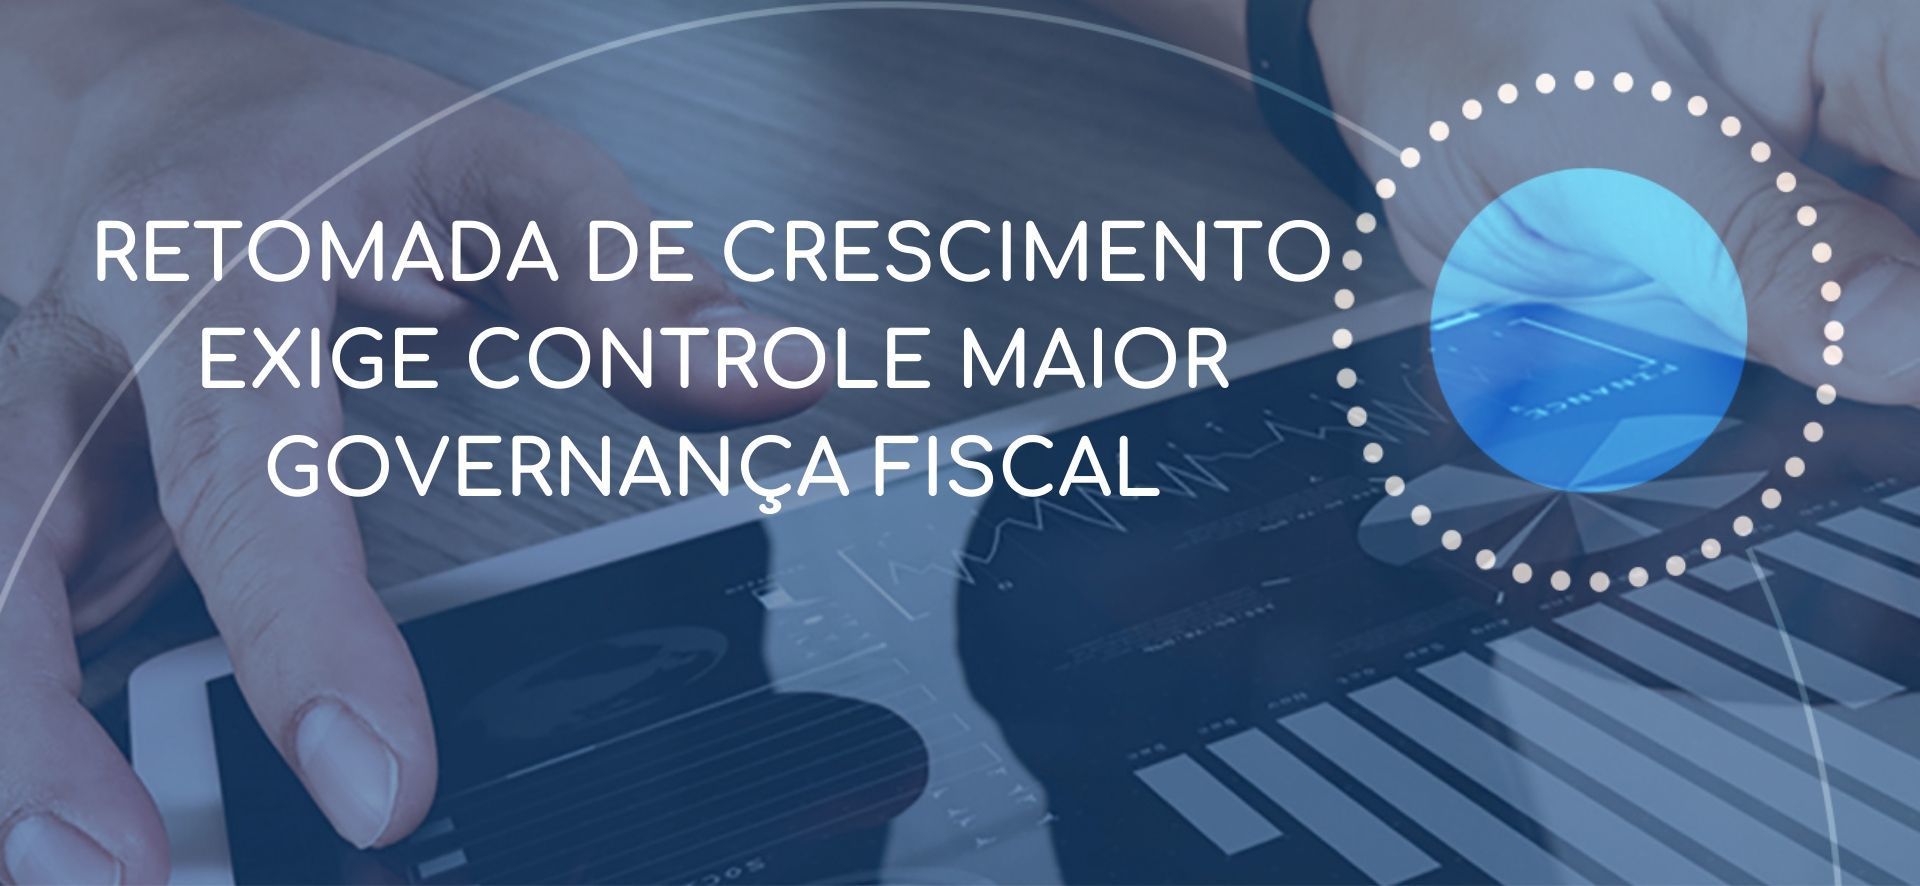 Retomada de crescimento exige controle maior governança fiscal